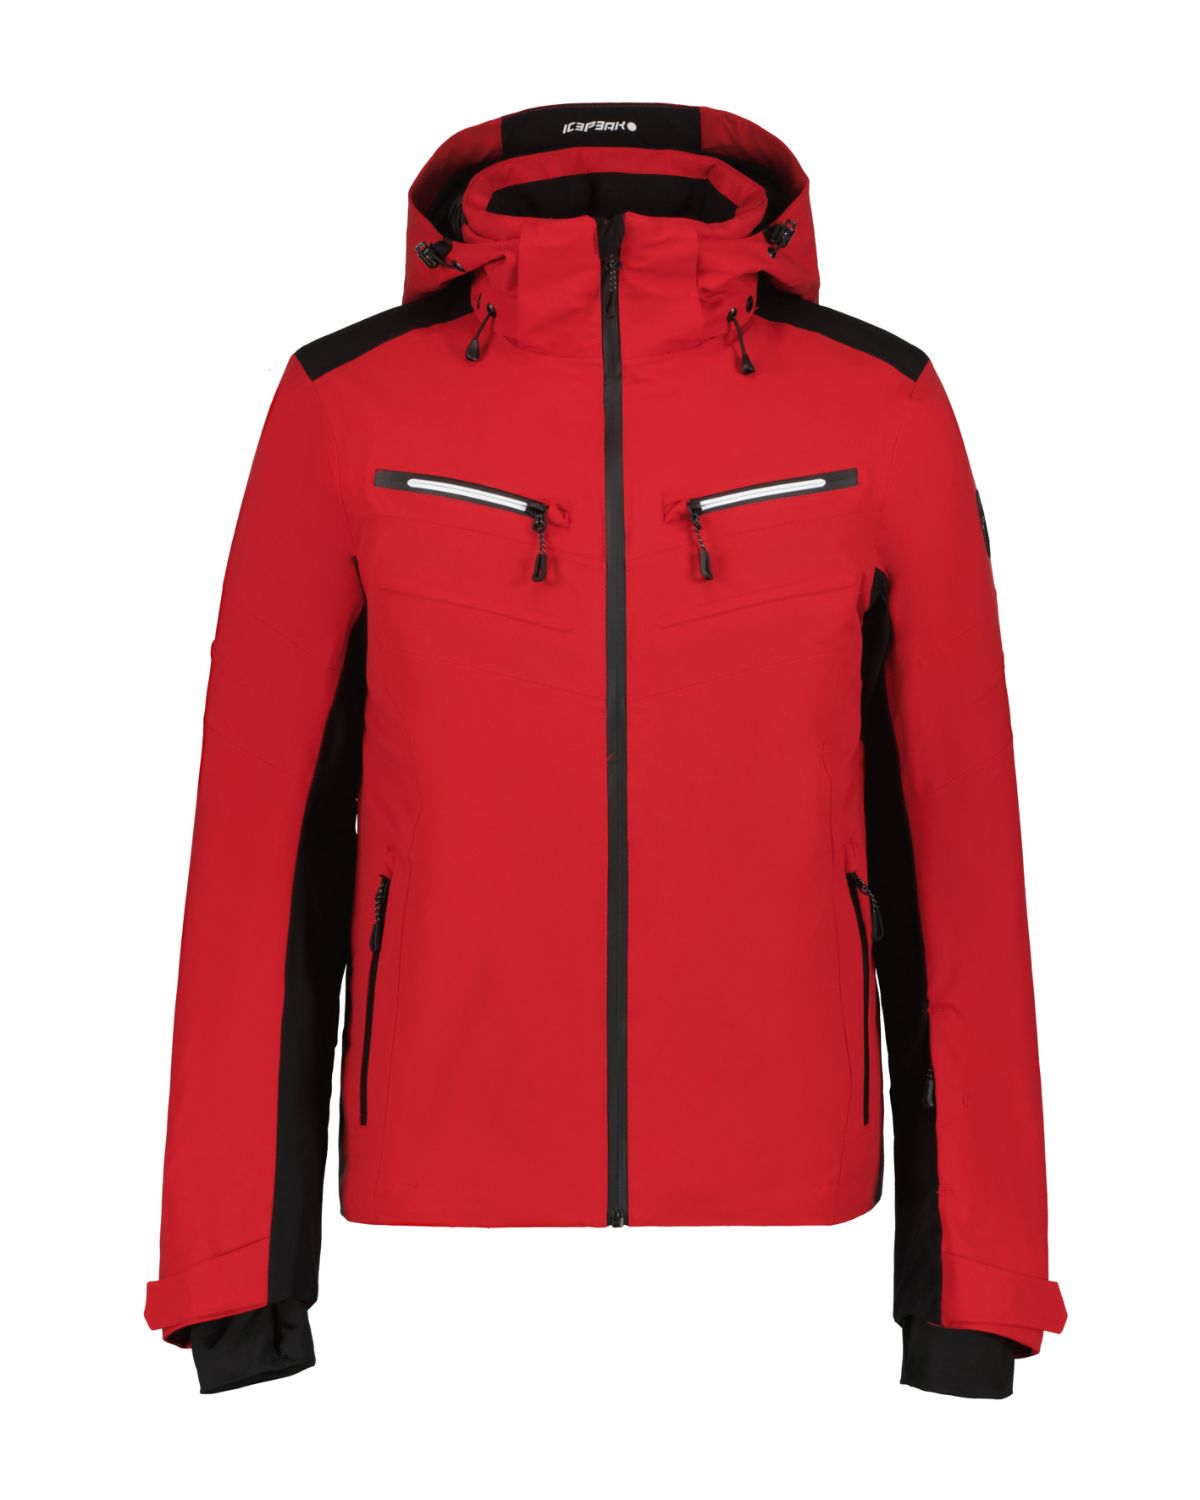 Icepeak FARWELL, moška smučarska jakna, rdeča | Intersport